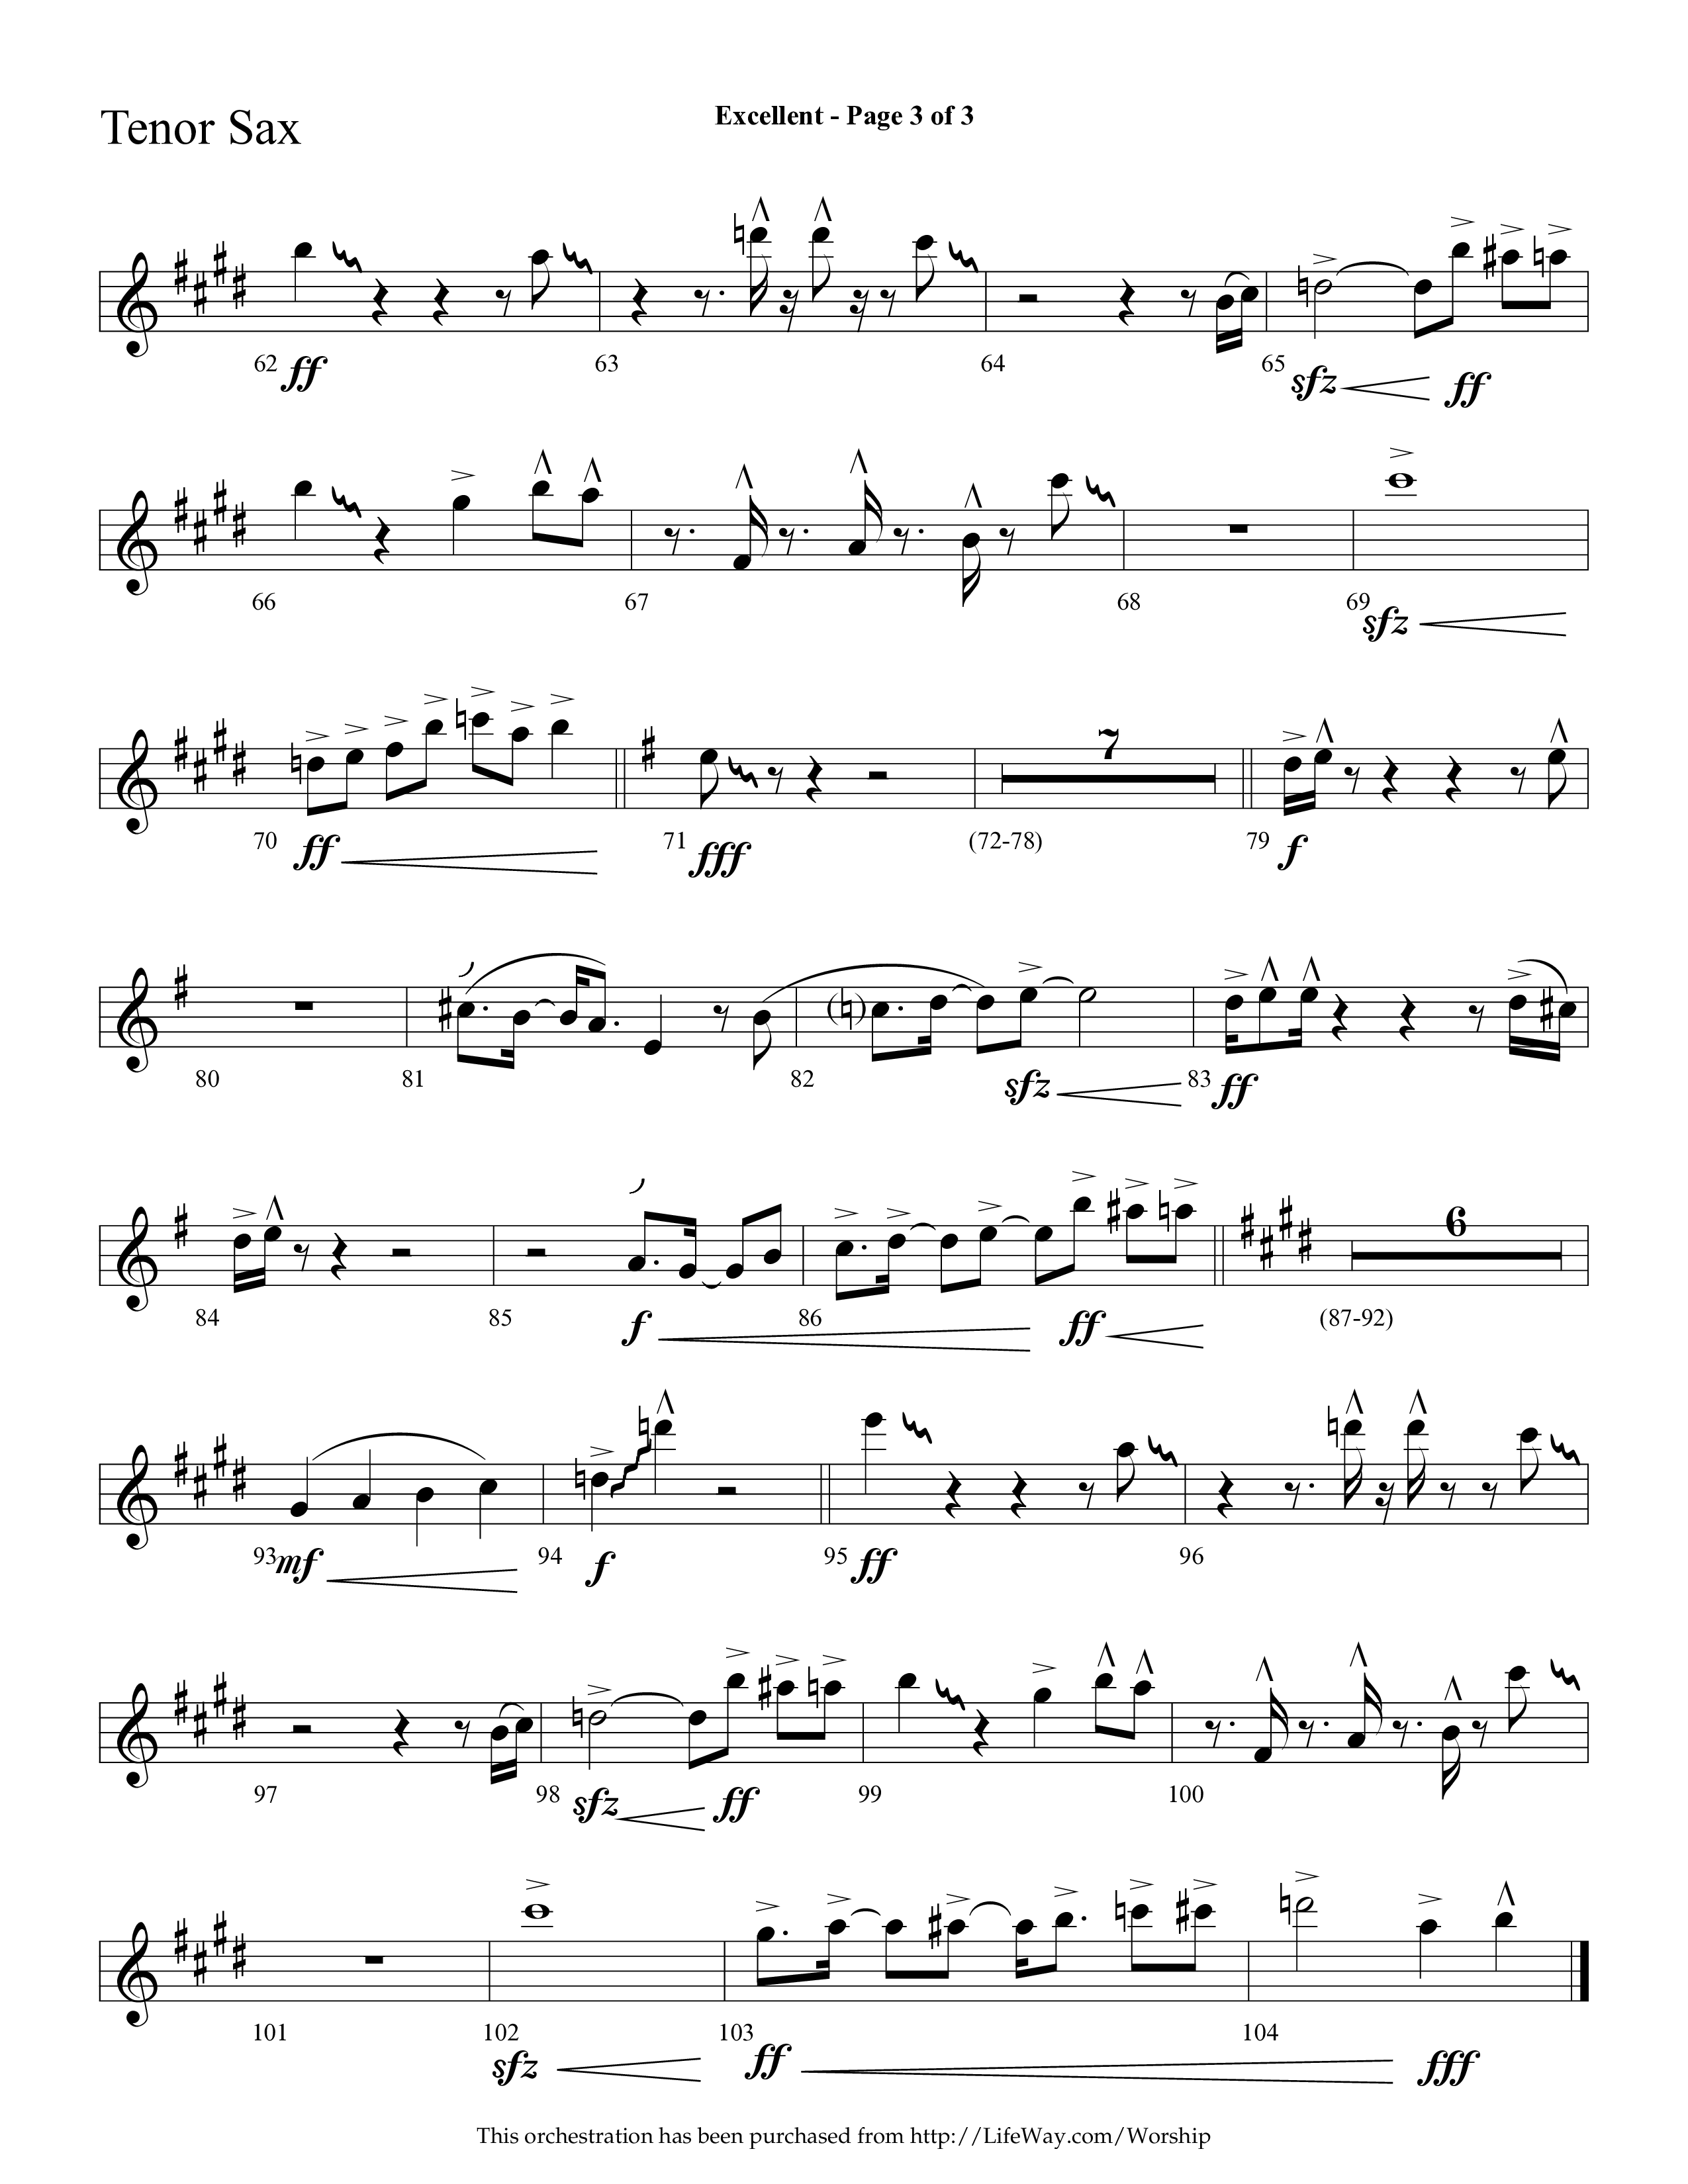 Excellent (Choral Anthem SATB) Tenor Sax 1 (Lifeway Choral / Arr. Cliff Duren)